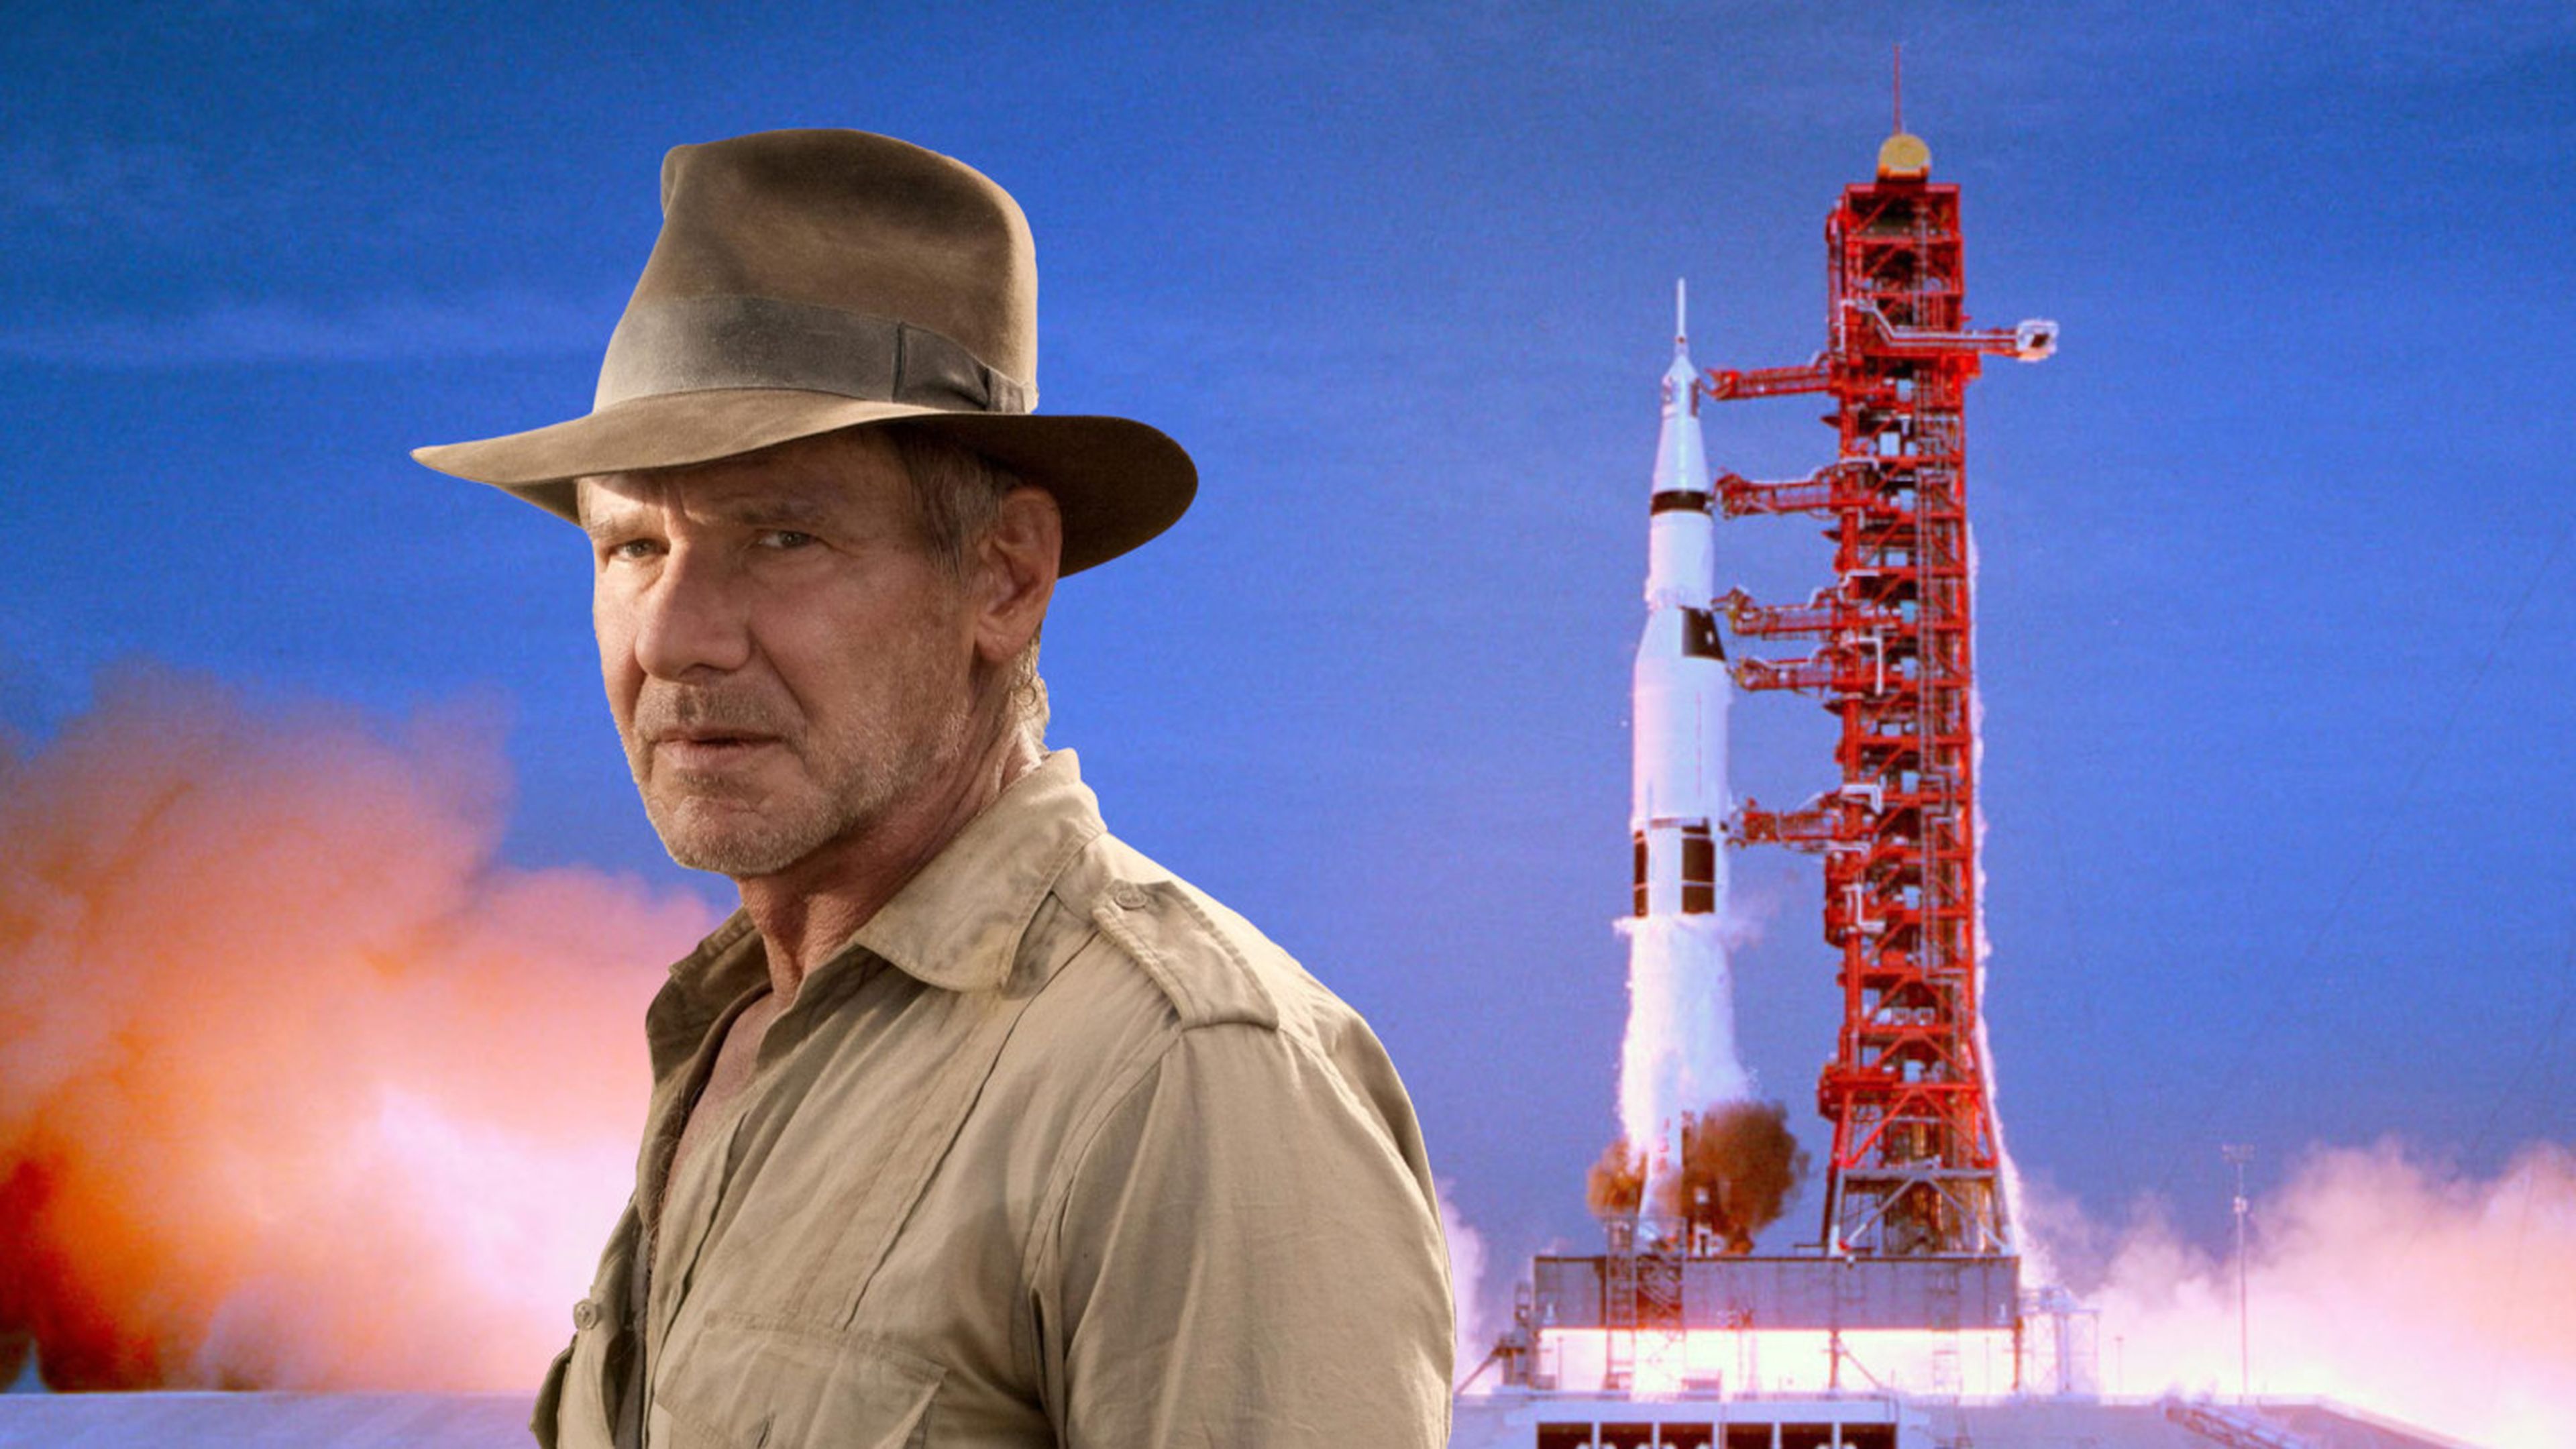 Indiana Jones Apollo 11